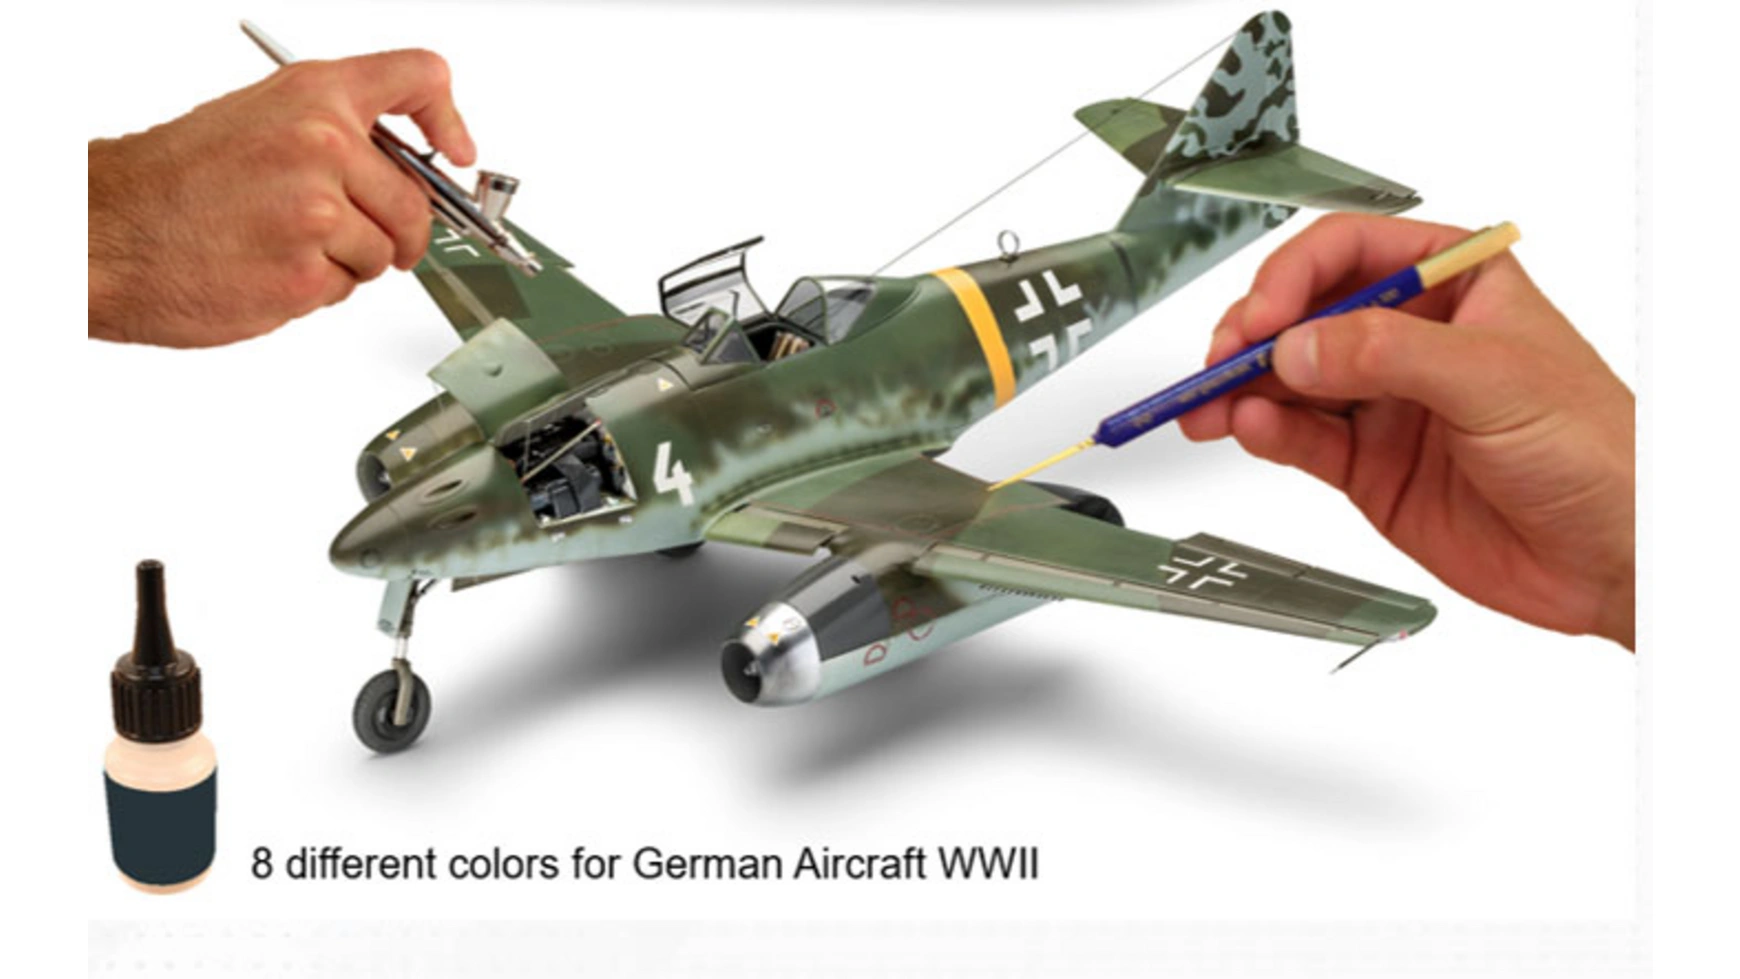 Цвет модели Revell немецкий самолет времен Второй мировой войны фонарик времен второй мировой войны немецкий акцент немецкой службы elite m32 бриджи из шерсти черного цвета